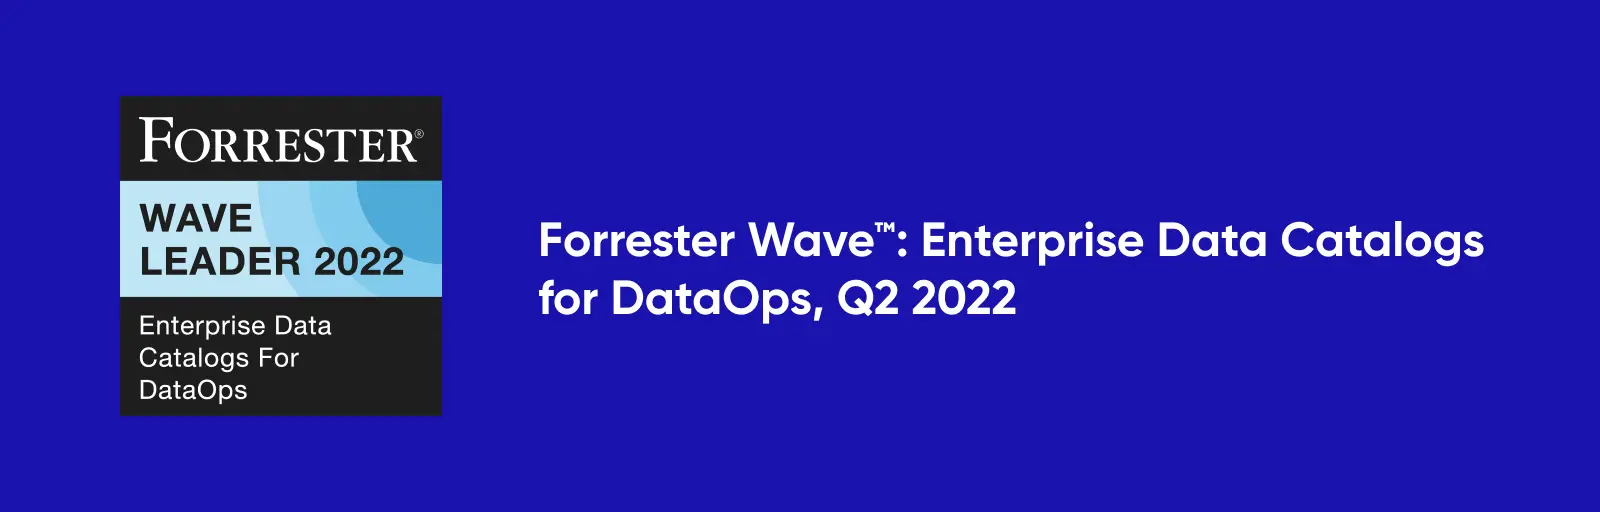 The Forrester Wave™: Enterprise Data Catalog for DataOps, Q2 2022 